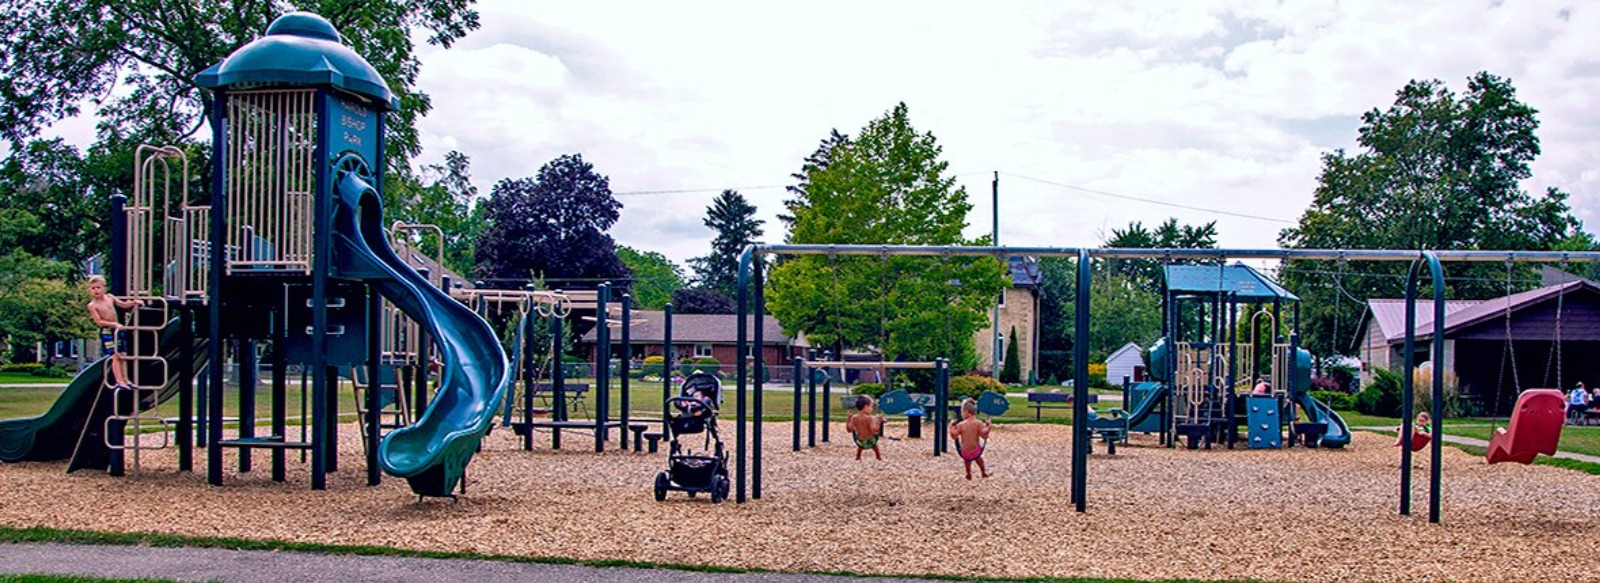 park playground norwich